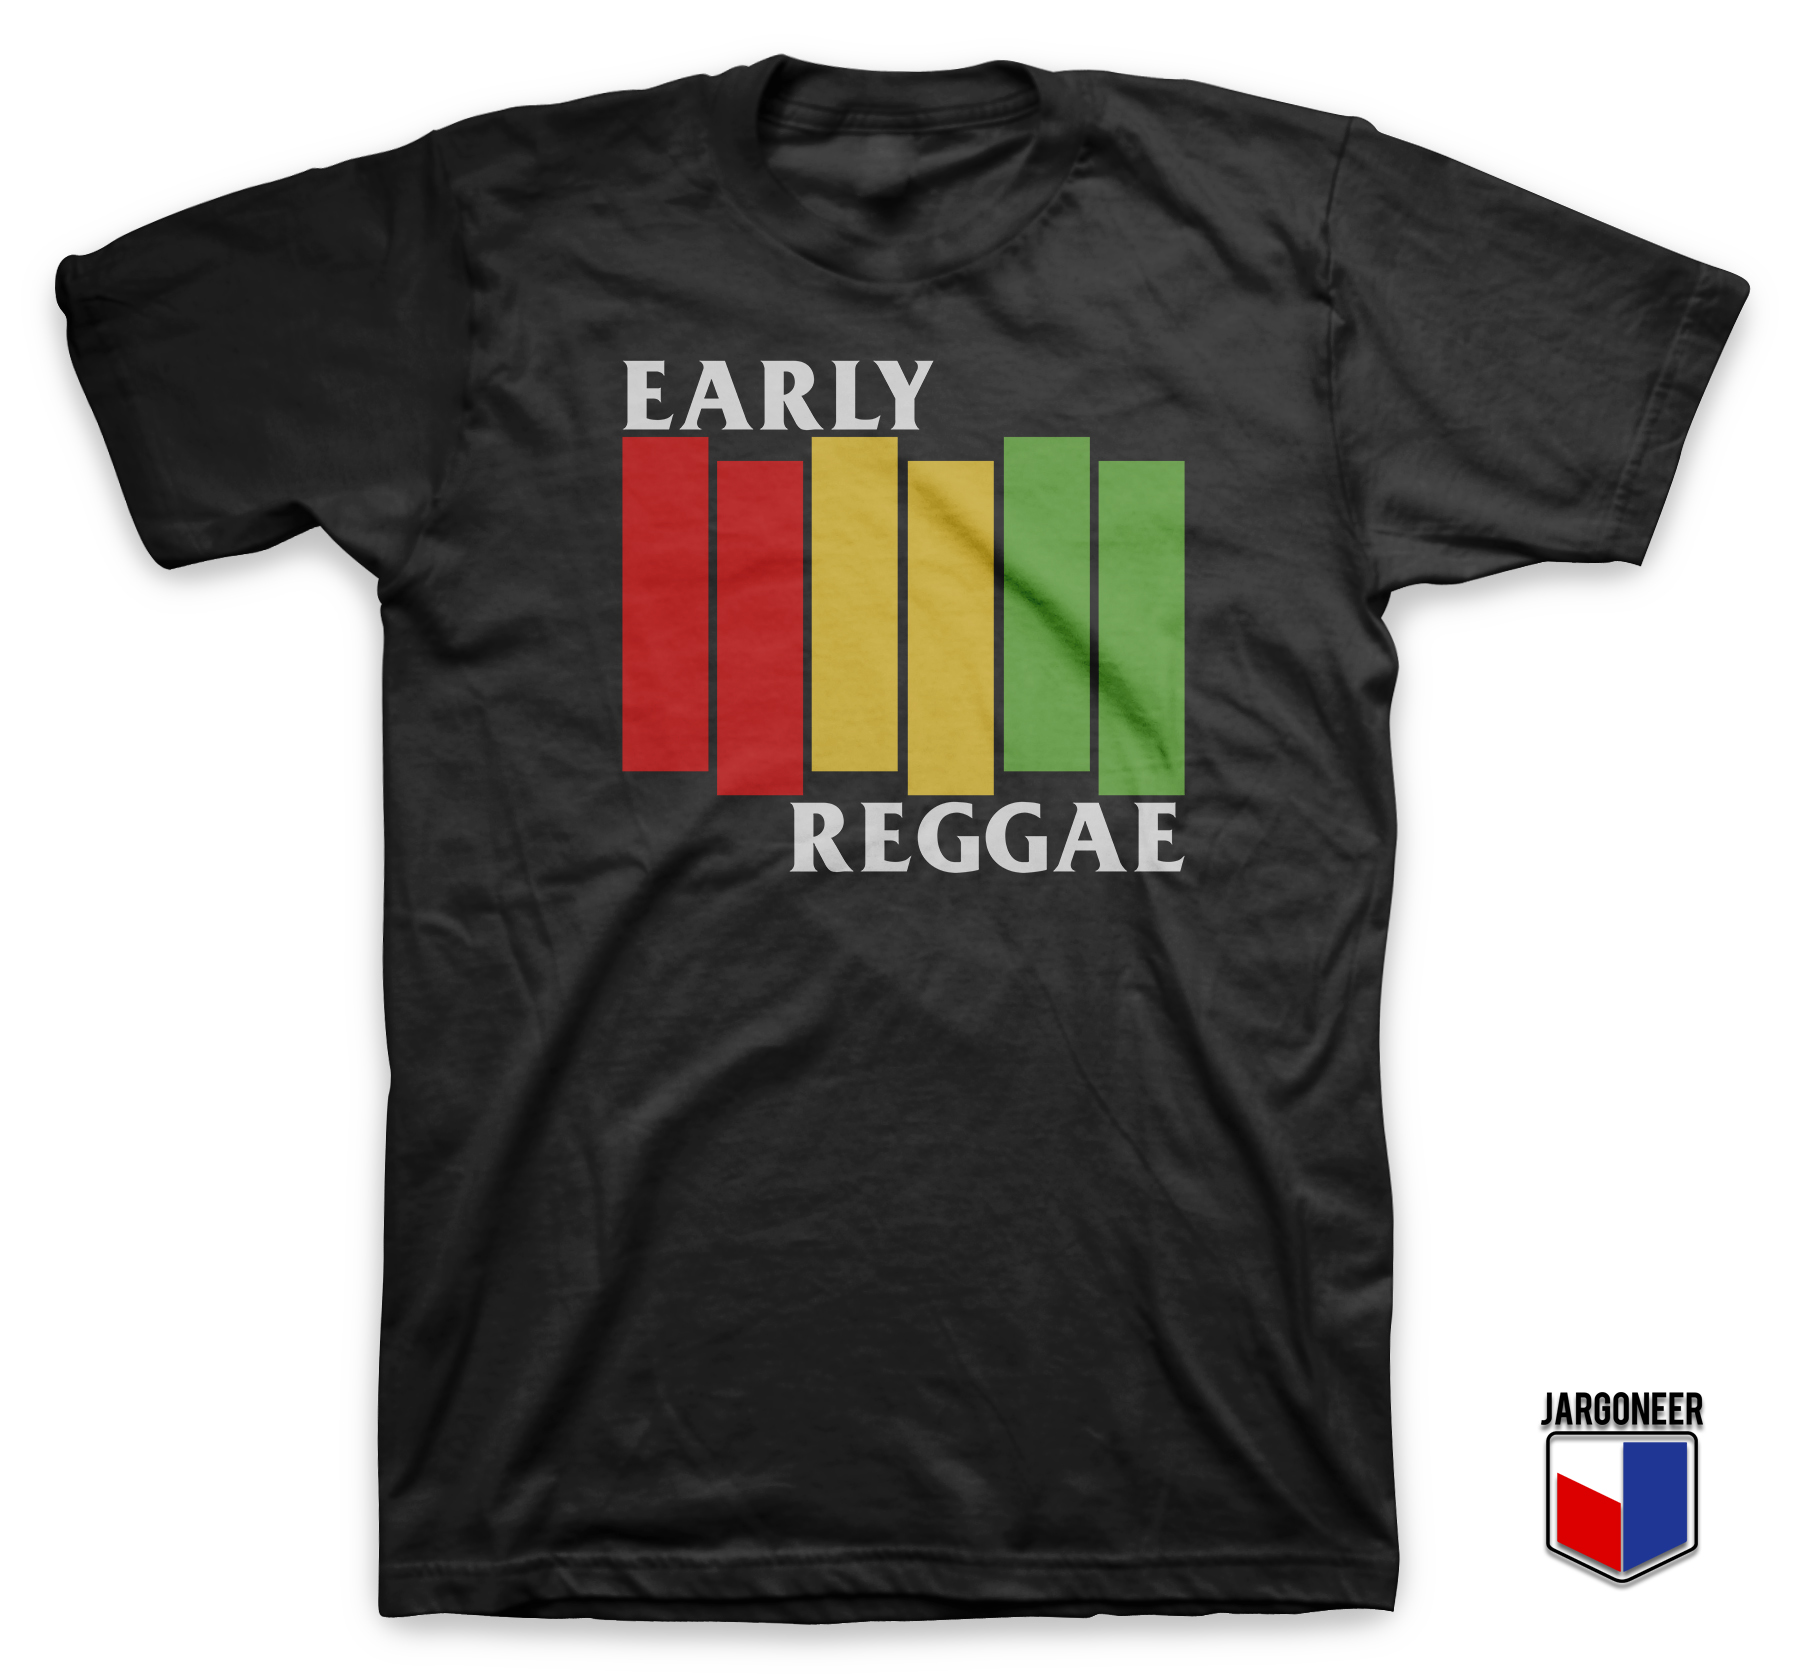 Early Reggae Flag Black TShirt - Shop Unique Graphic Cool Shirt Designs